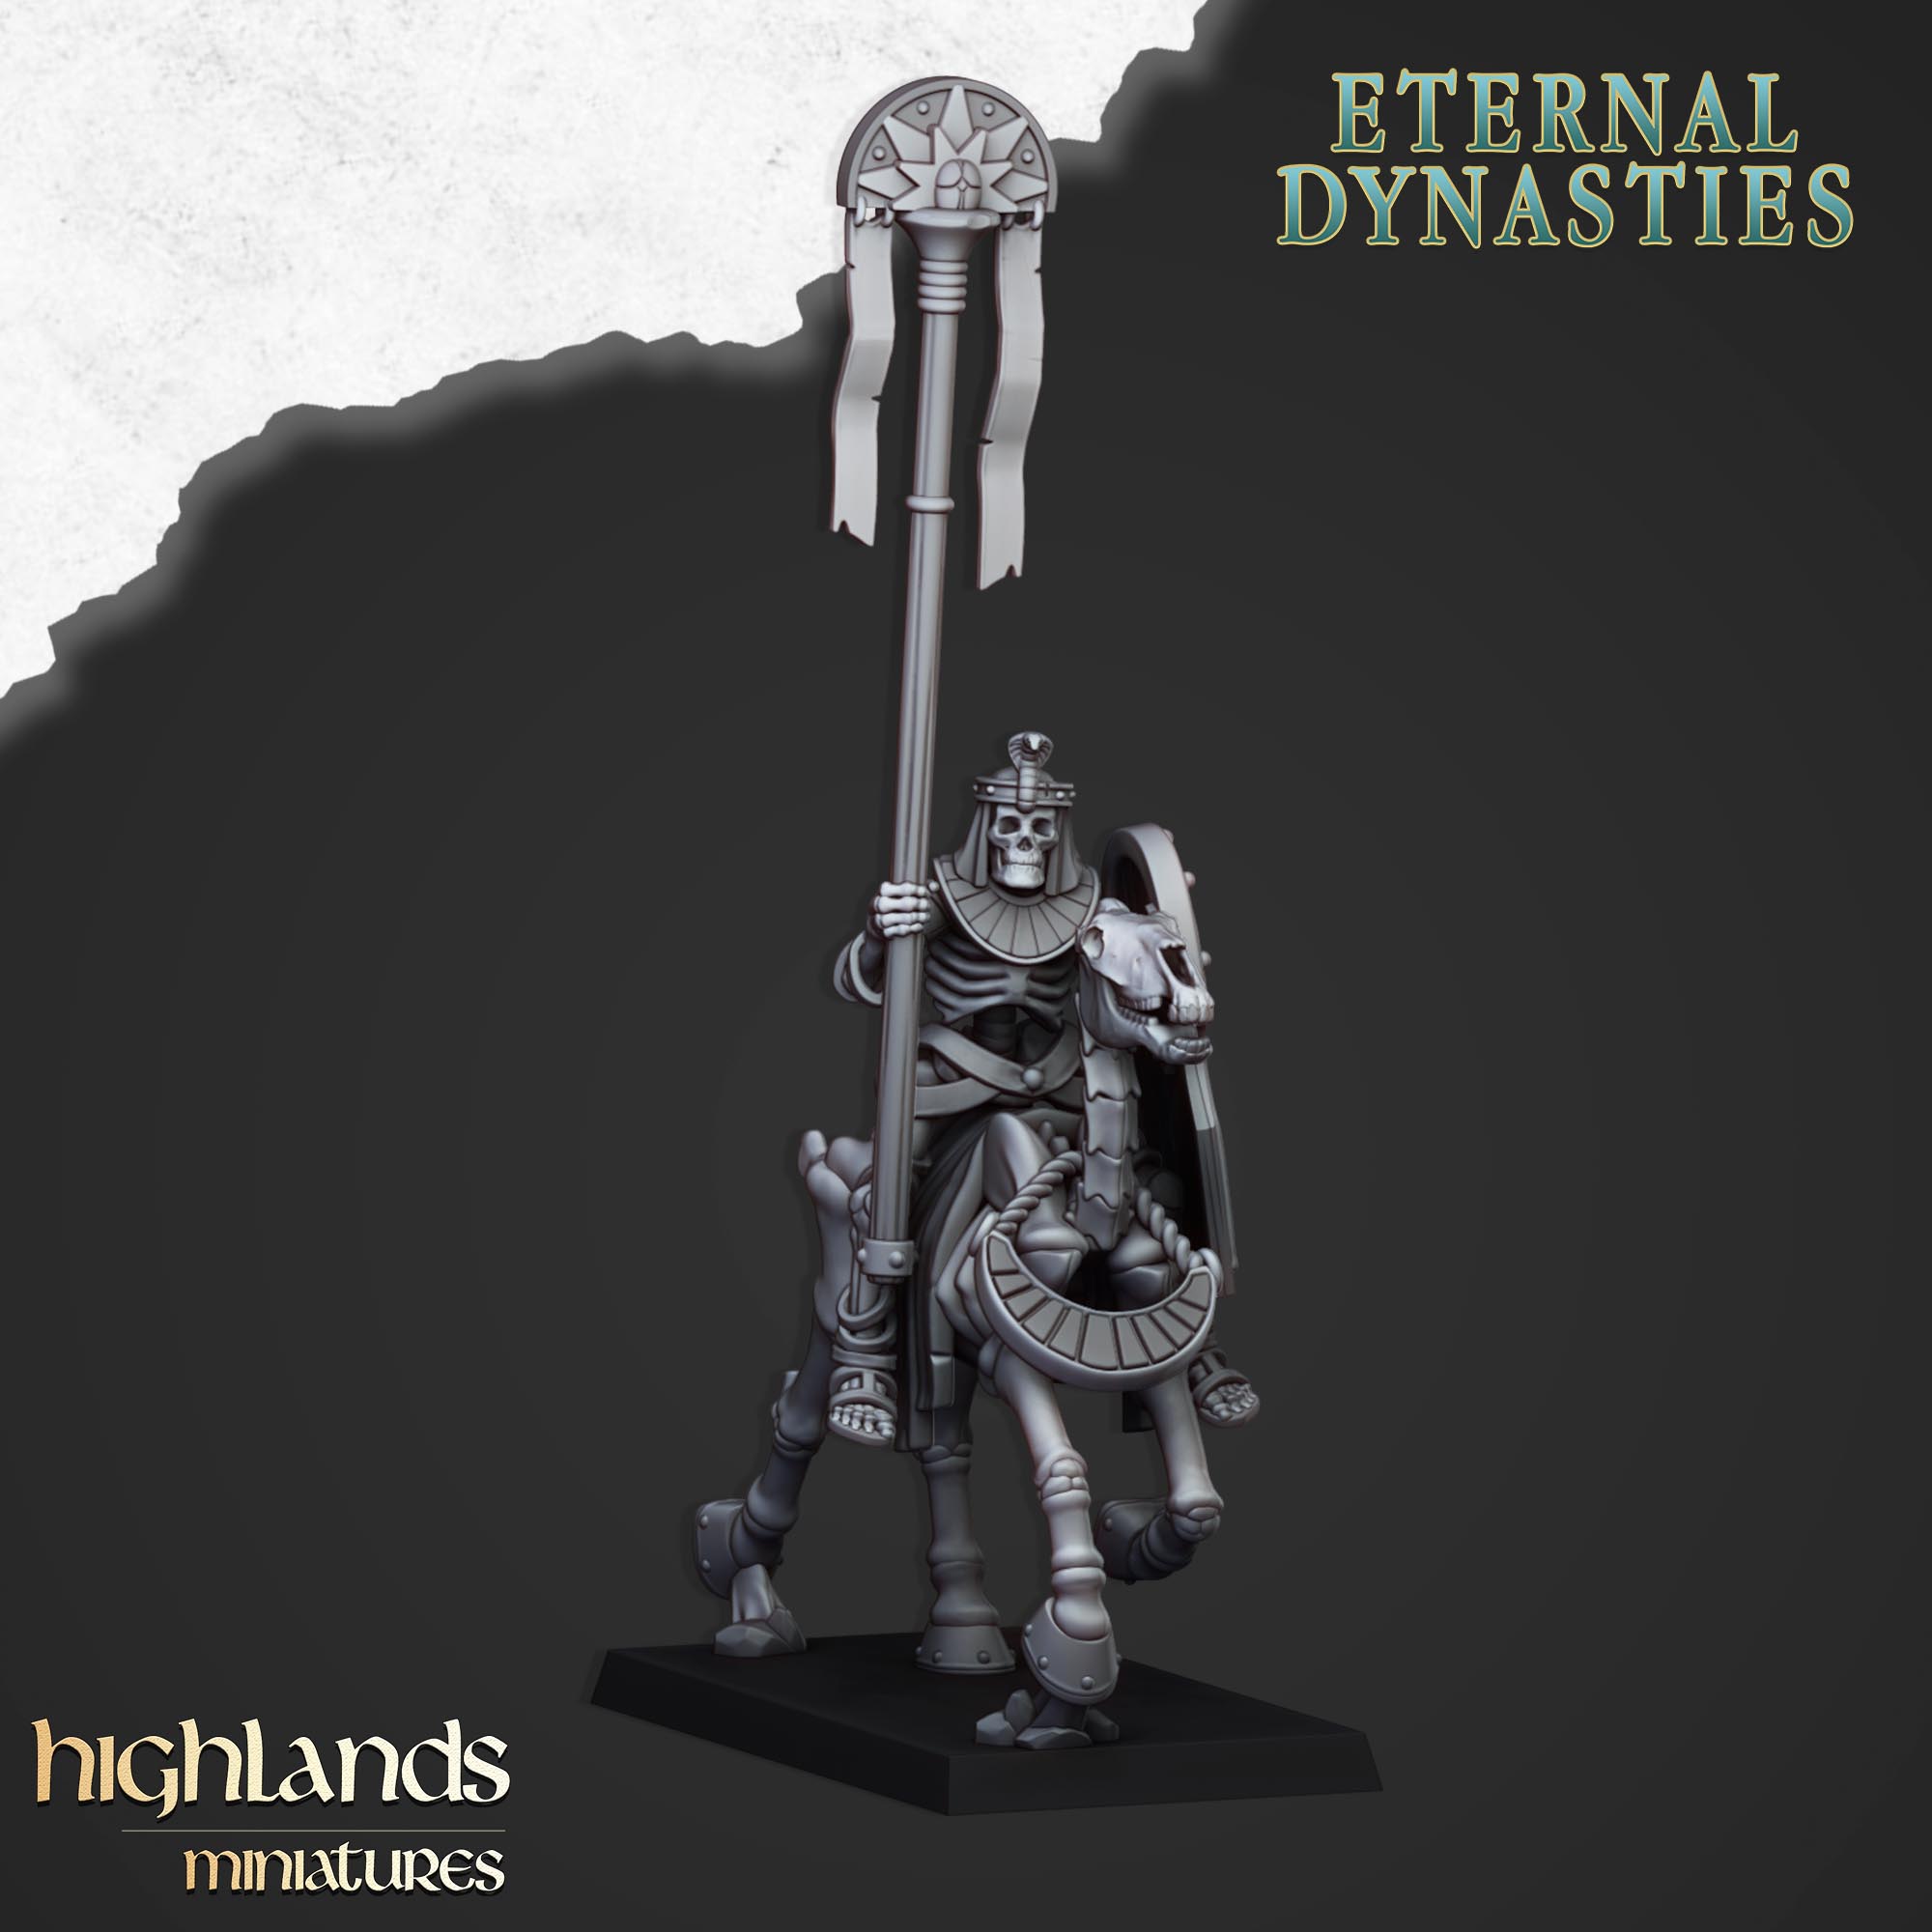 Caballería esquelética antigua con lanzas (x8) - Dinastías eternas | Miniaturas de las Tierras Altas